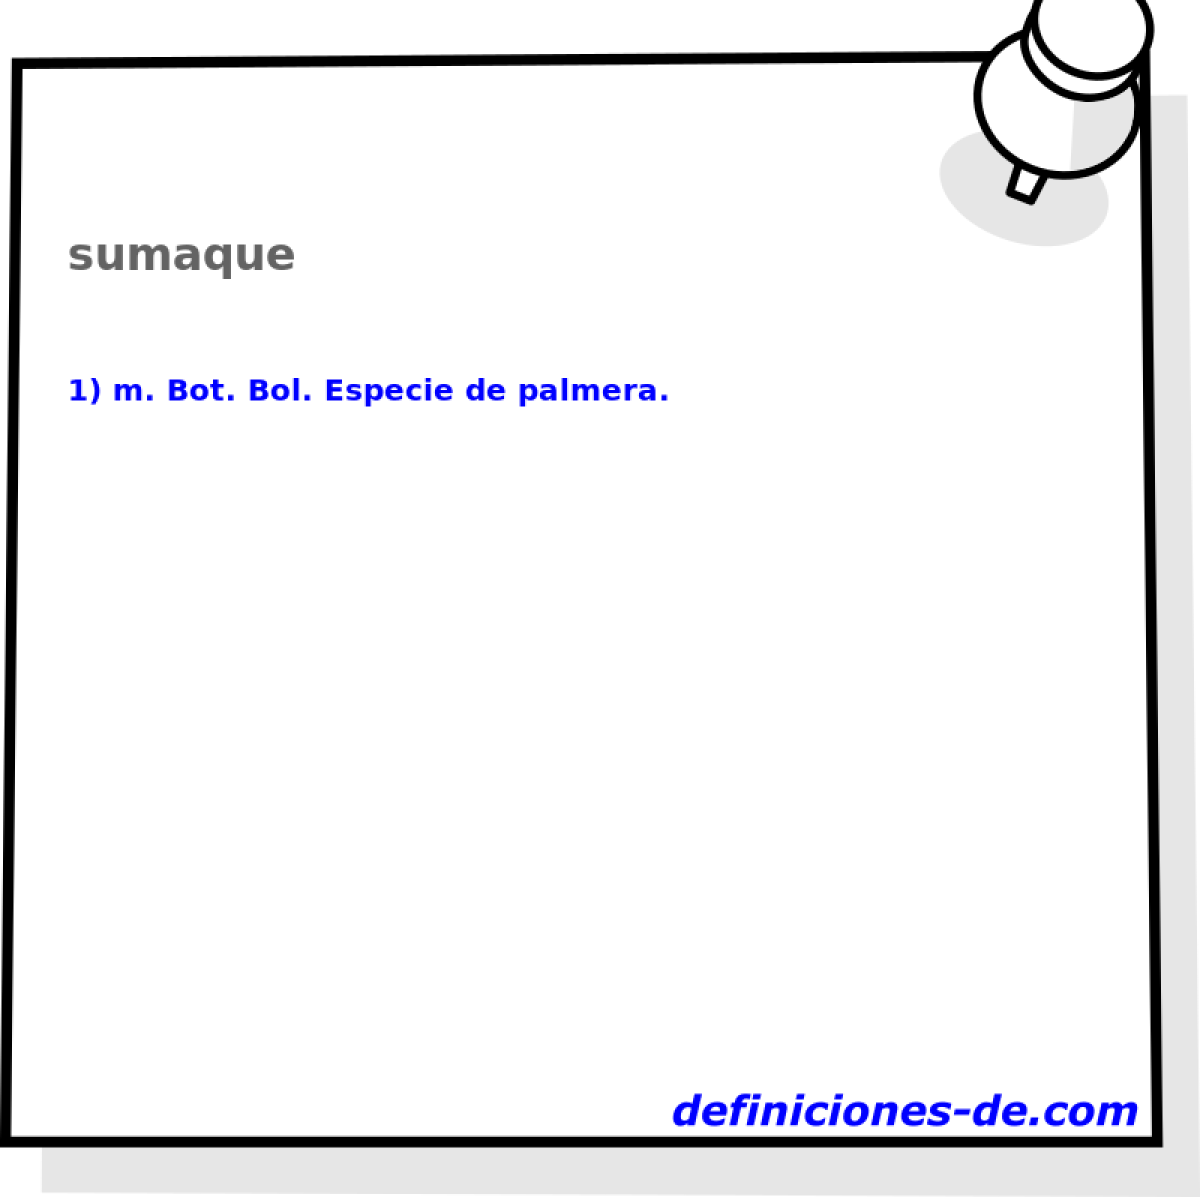 sumaque 